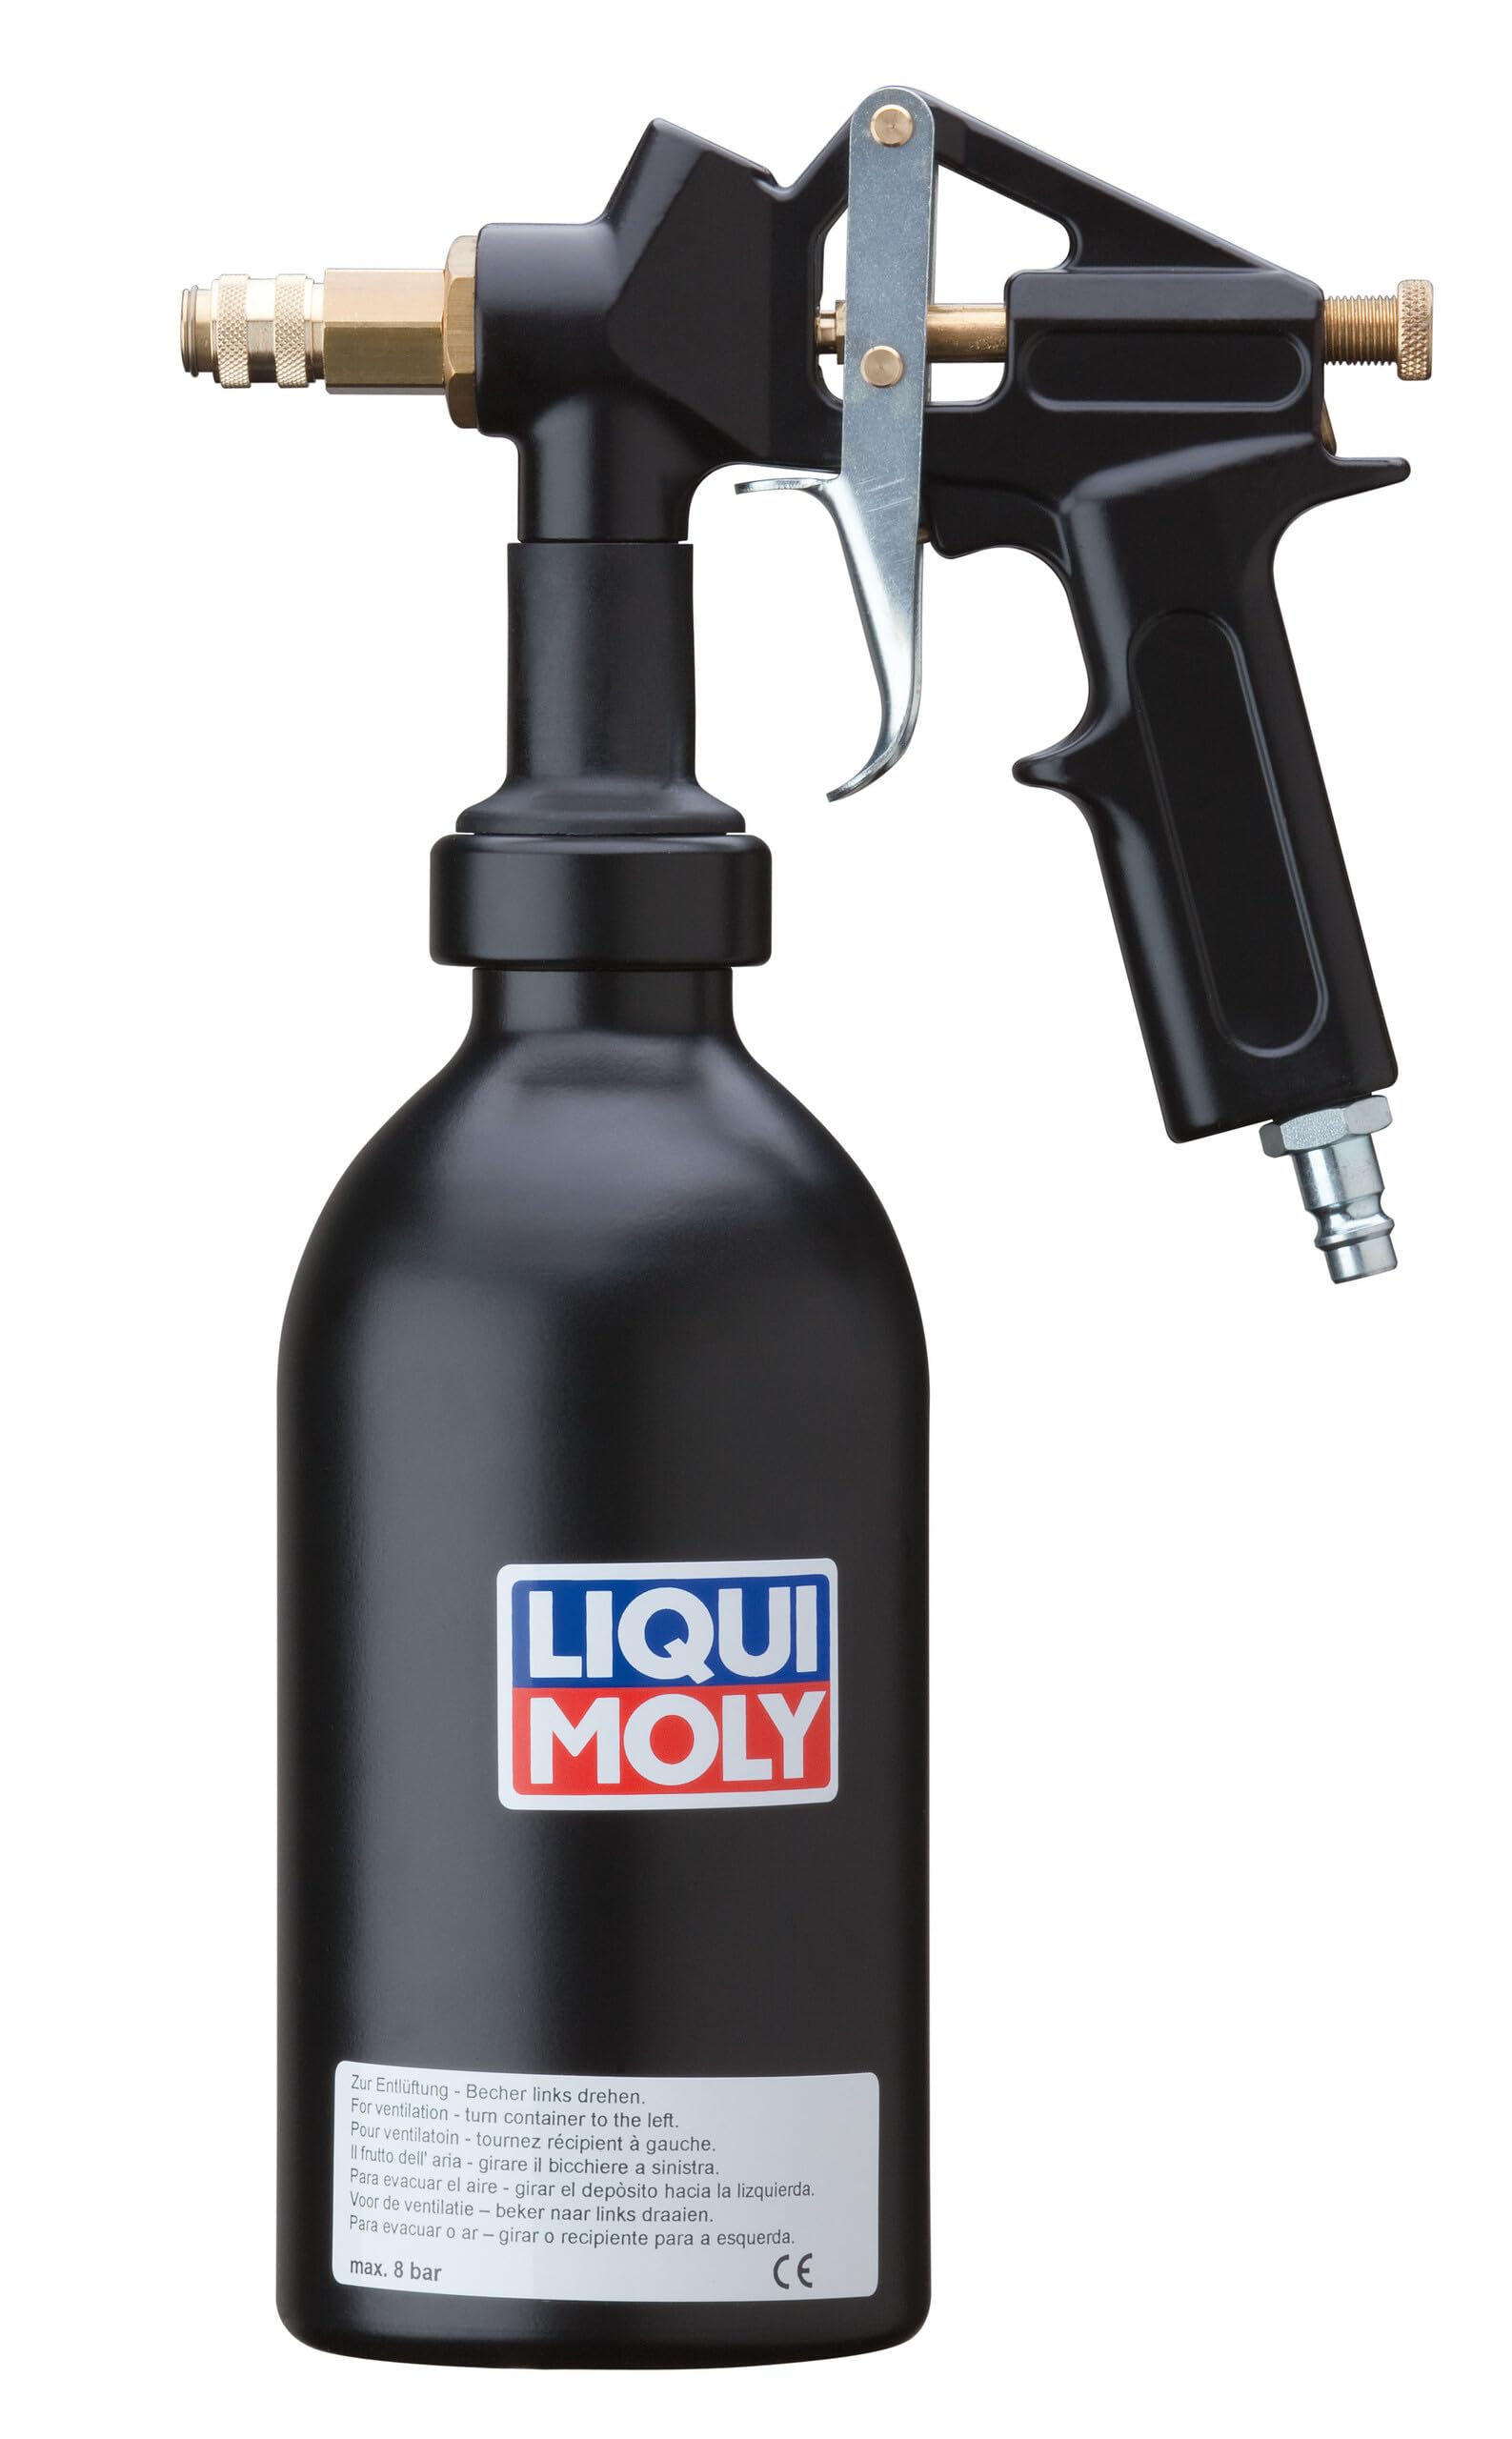 LIQUI MOLY DPF-Druckbecherpistole | 1 Stk | Werkstatt-Zubehör | Werkstattausrüstung | Art.-Nr.: 7946 von Liqui Moly